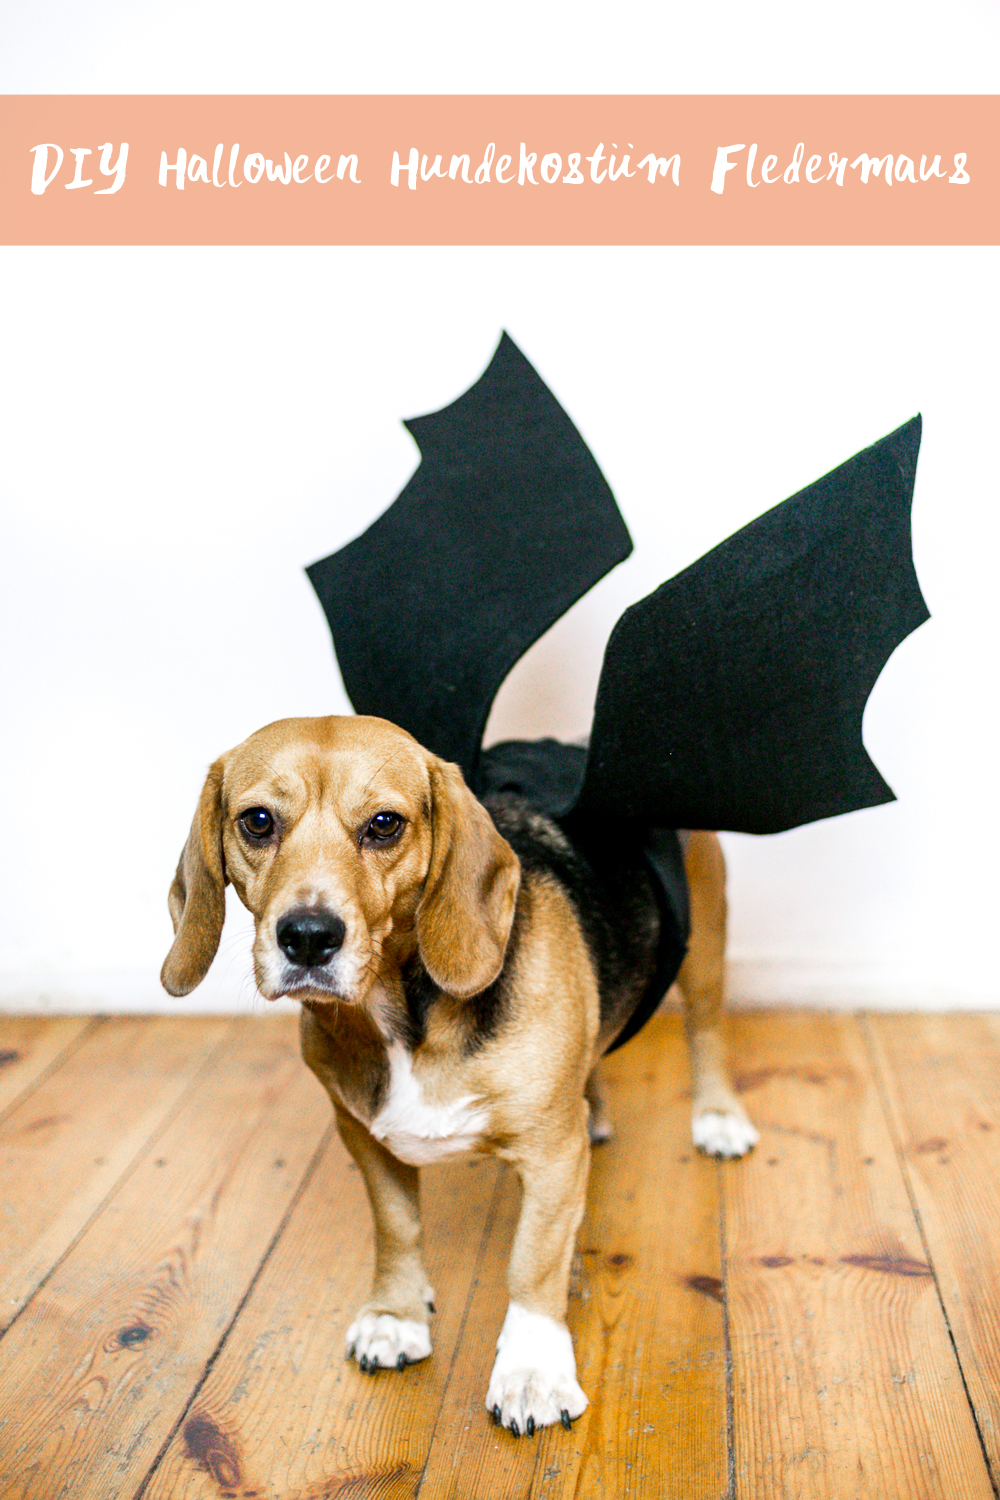 DIY Halloween Fledermaus Hundekostüm